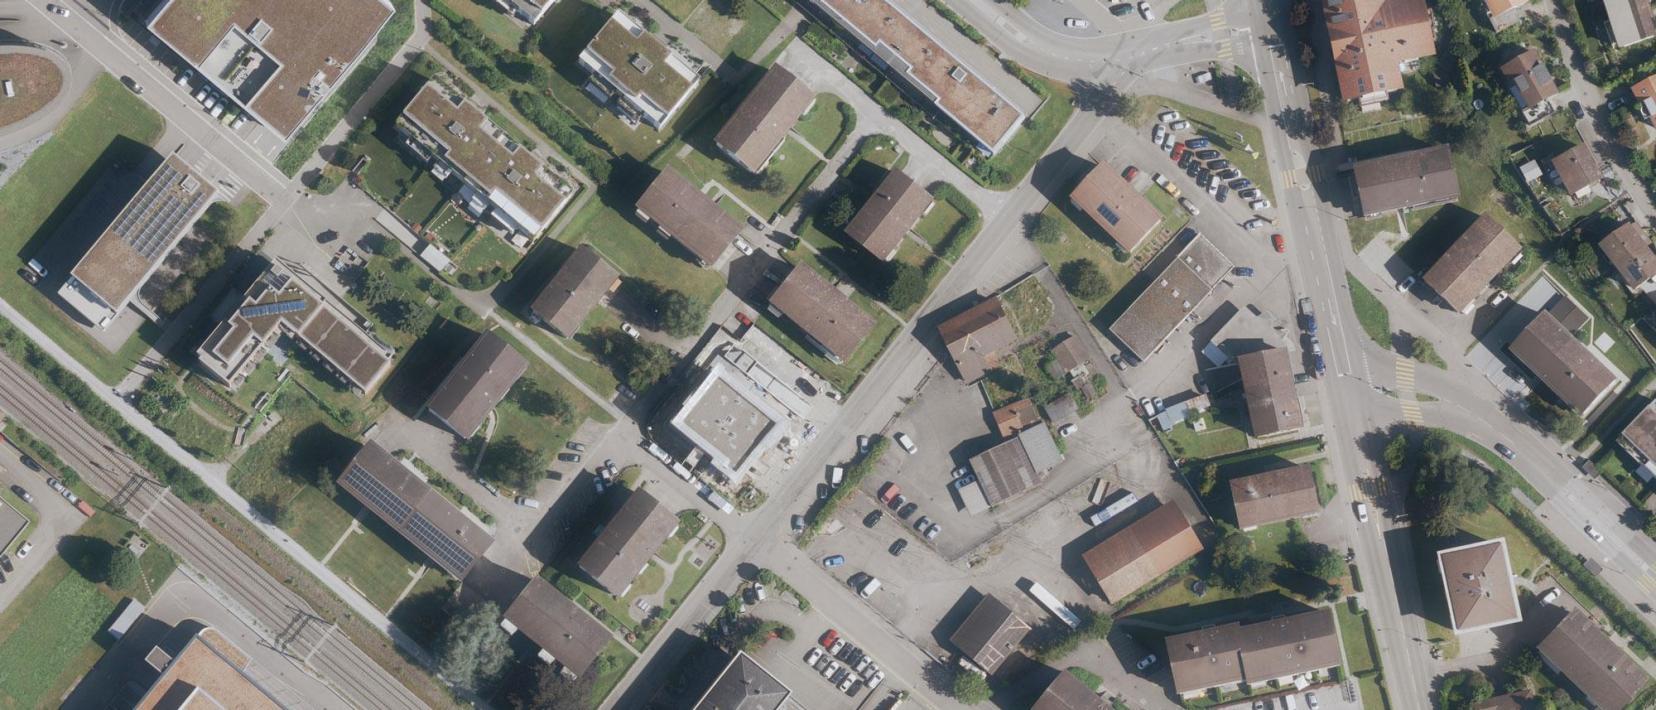 Luftbild eines Siedlungsgebiet im Kanton Zürich